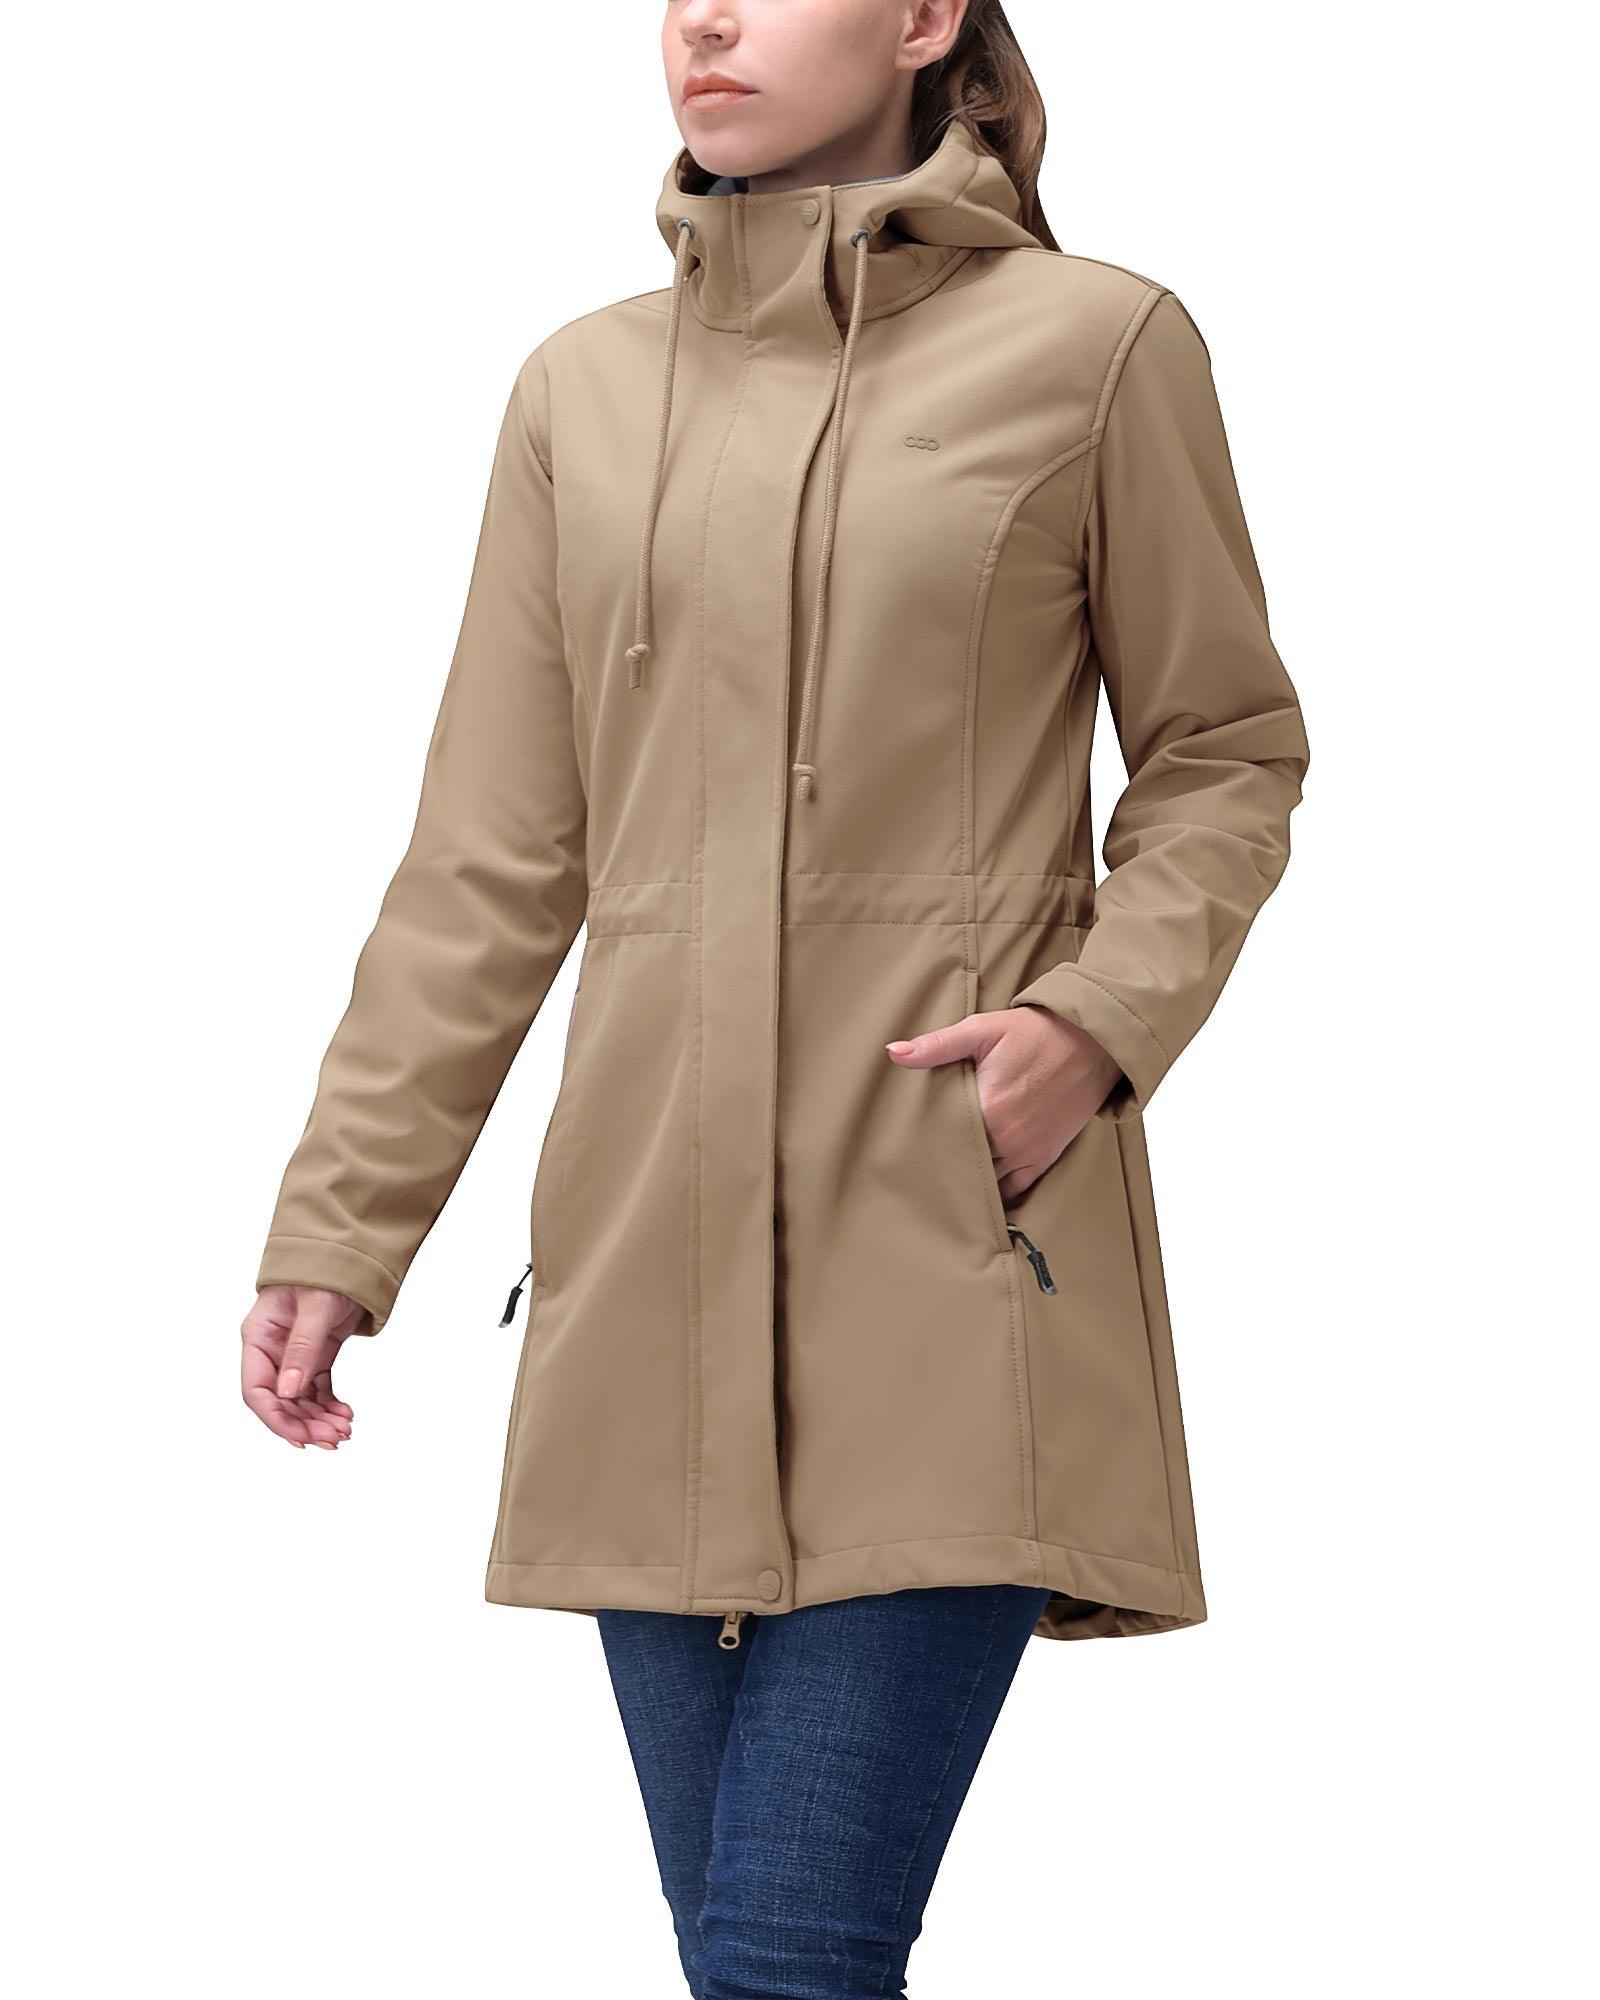 33,000ft Women's Zip Up Fleece Jacket, Long Sleeve Warm Soft Polar  Lightweight C